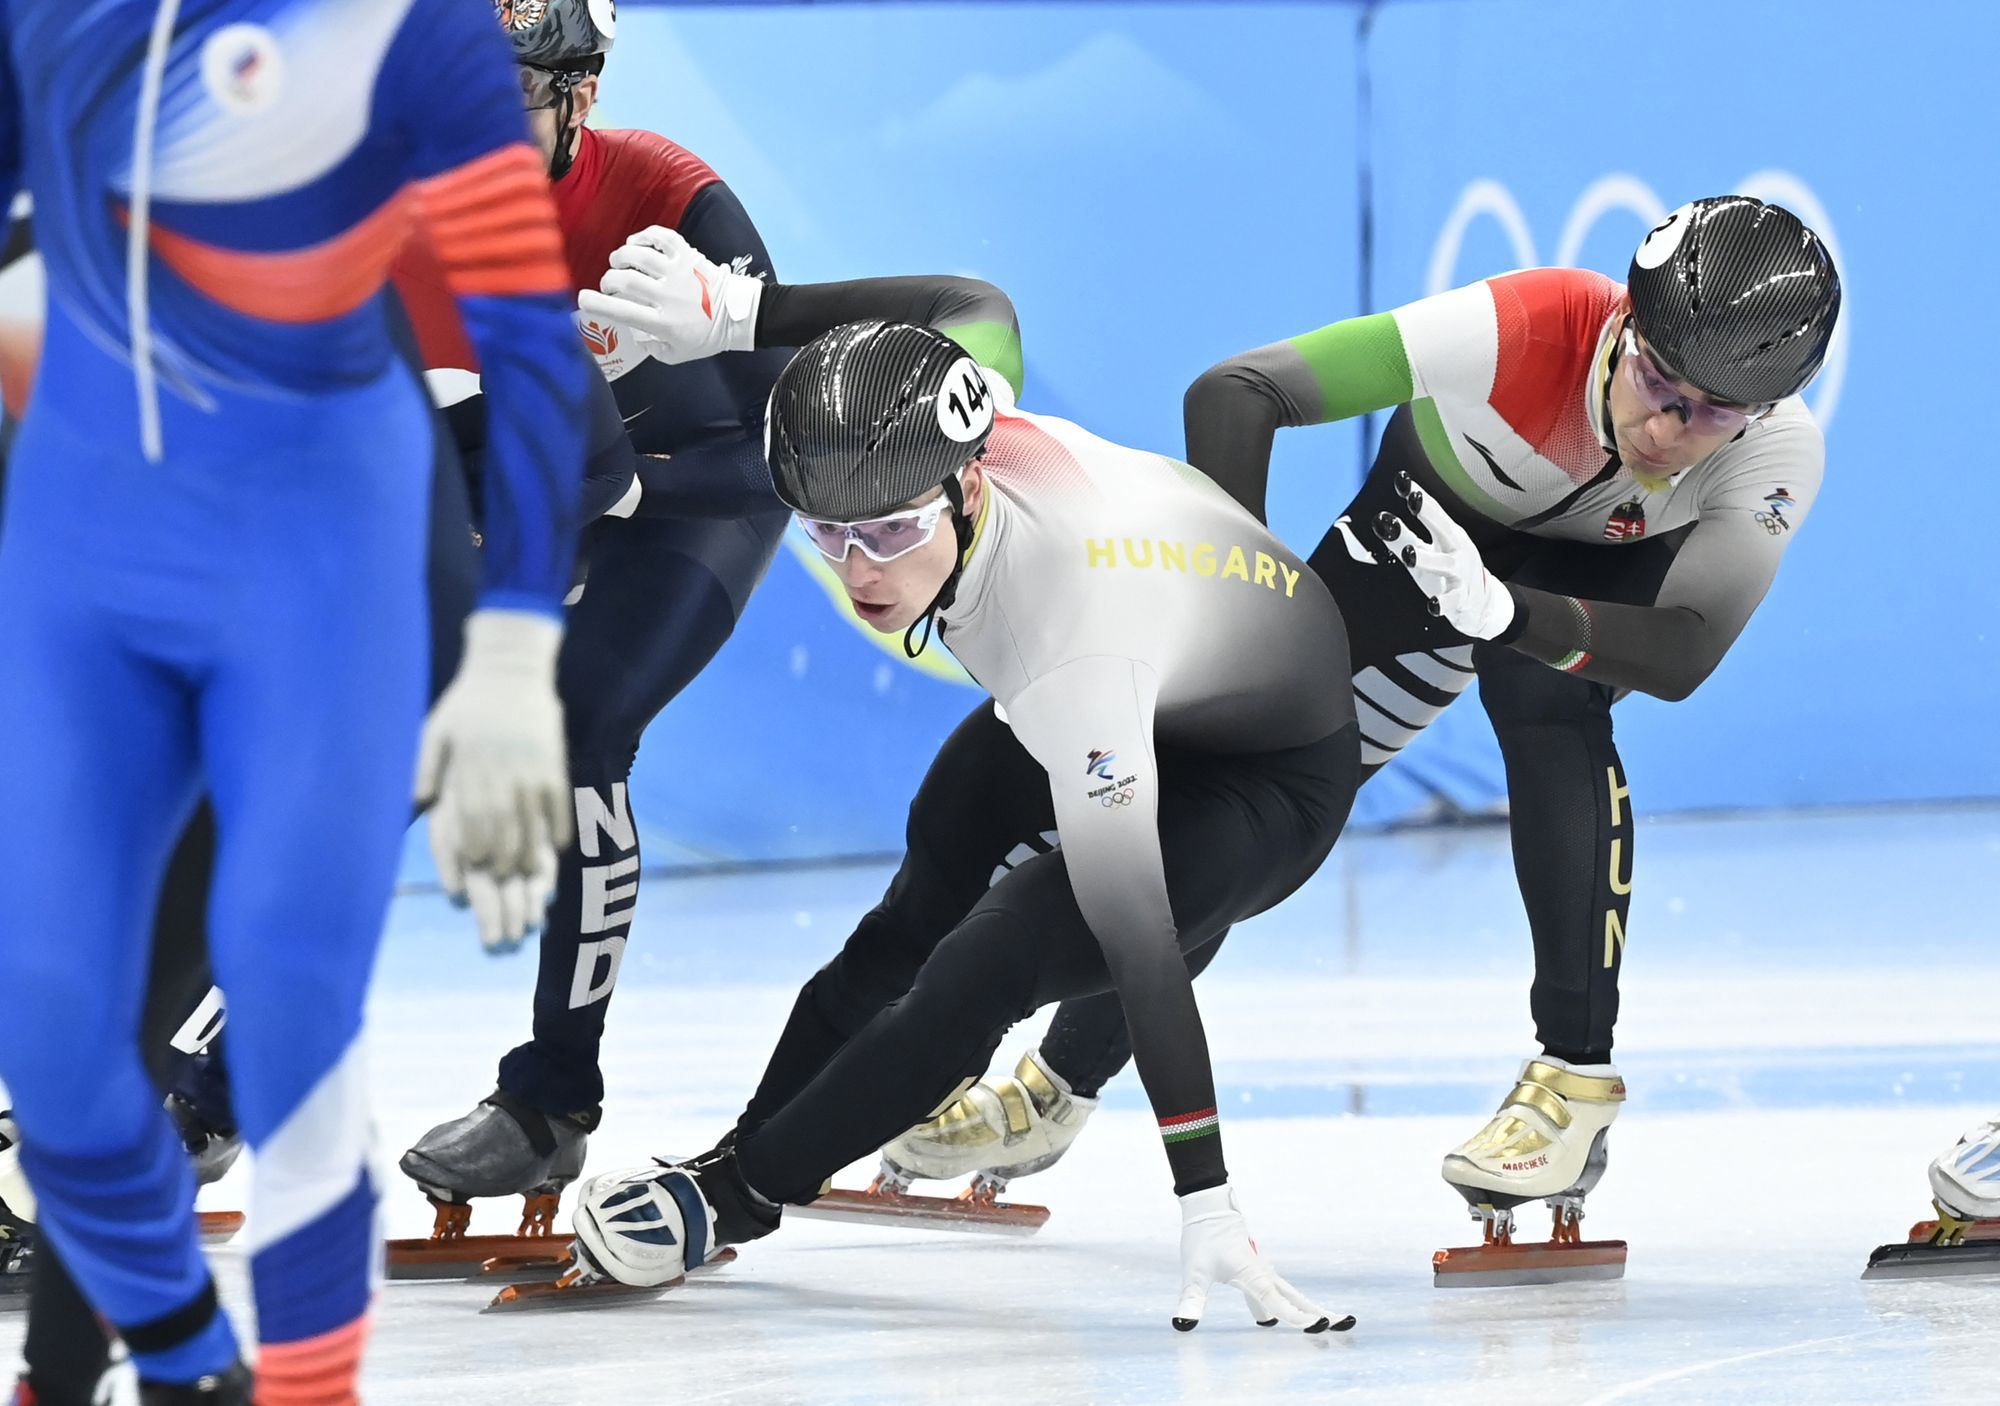 Nógrádi Bence váltja Liu Shaolin Sándort a férfi rövidpályás gyorskorcsolyázók 5000 méteres váltóversenyének középdöntőjében a pekingi téli olimpián. A magyar váltó a B döntőbe jutott. / Fotó: MTI/Kovács Tamás